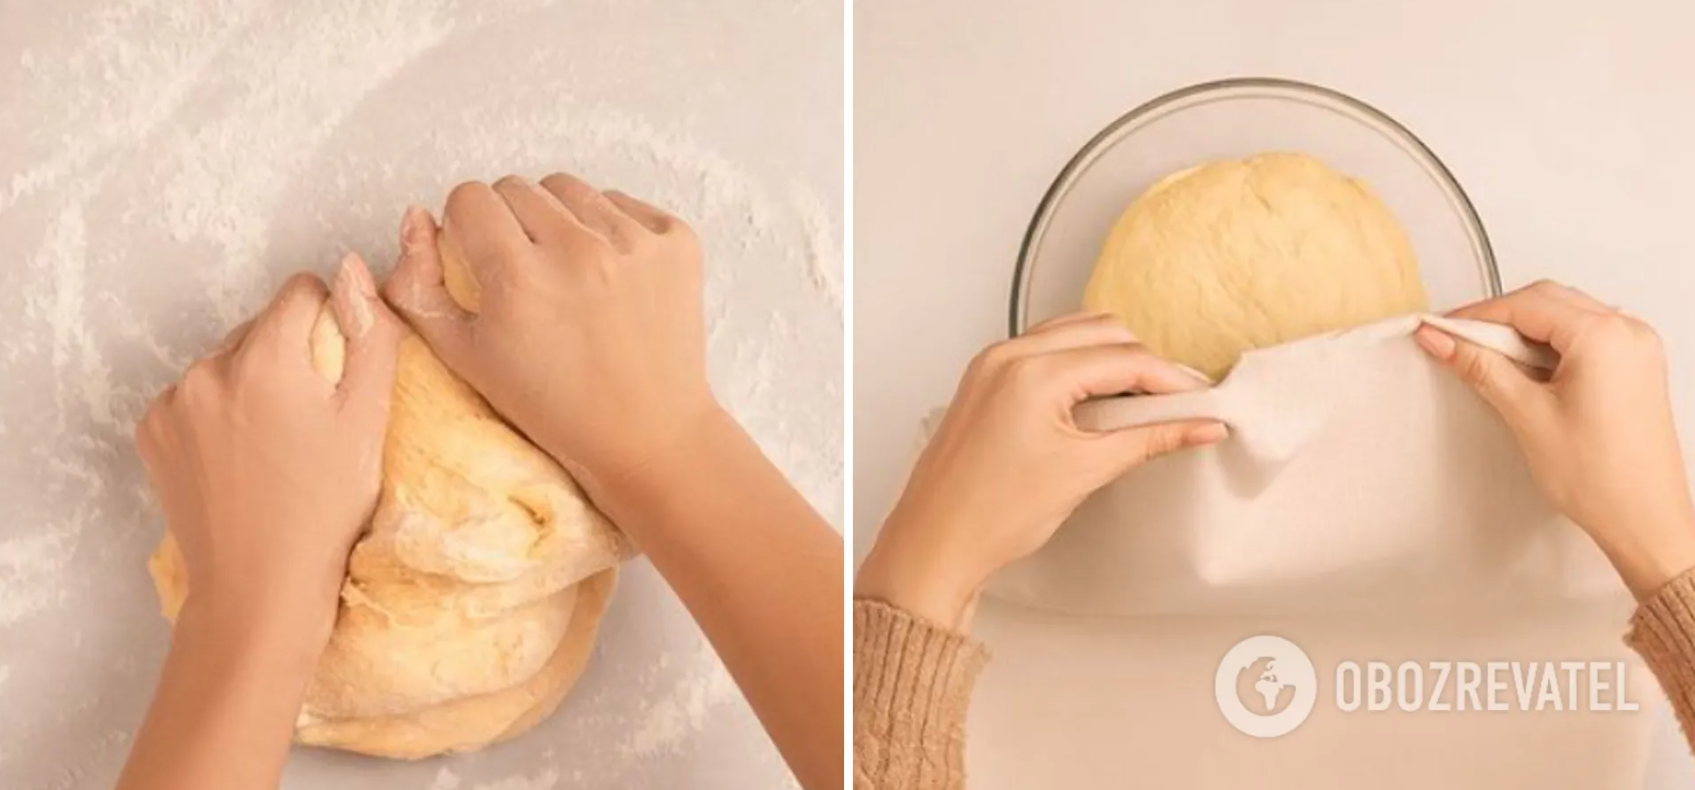 Dough for homemade scones